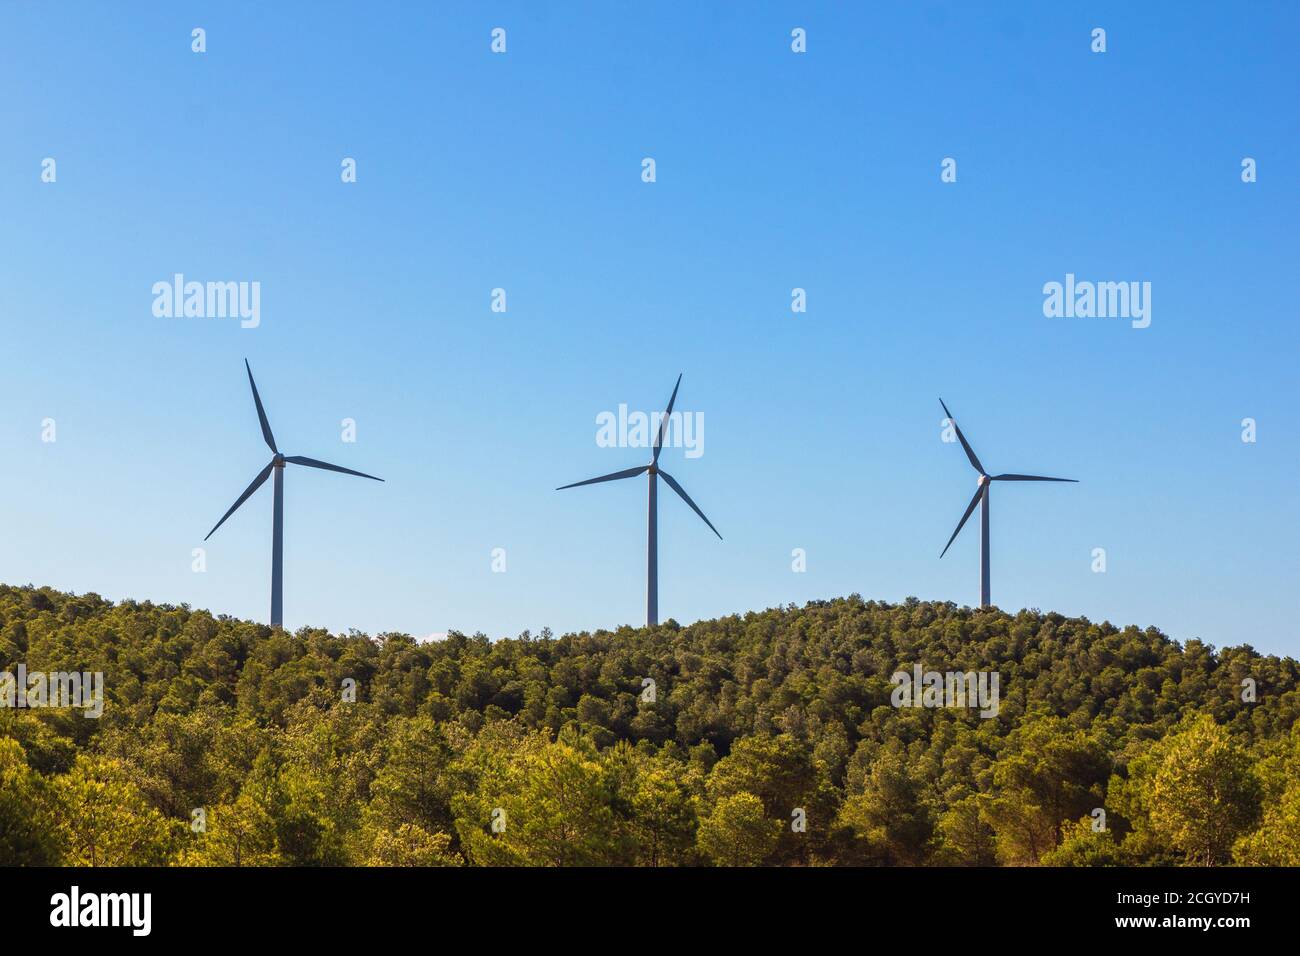 Foto de stock de tres molinos de viento en la cima de una montaña arbolada. Pertenecen a un parque eólico Foto de stock